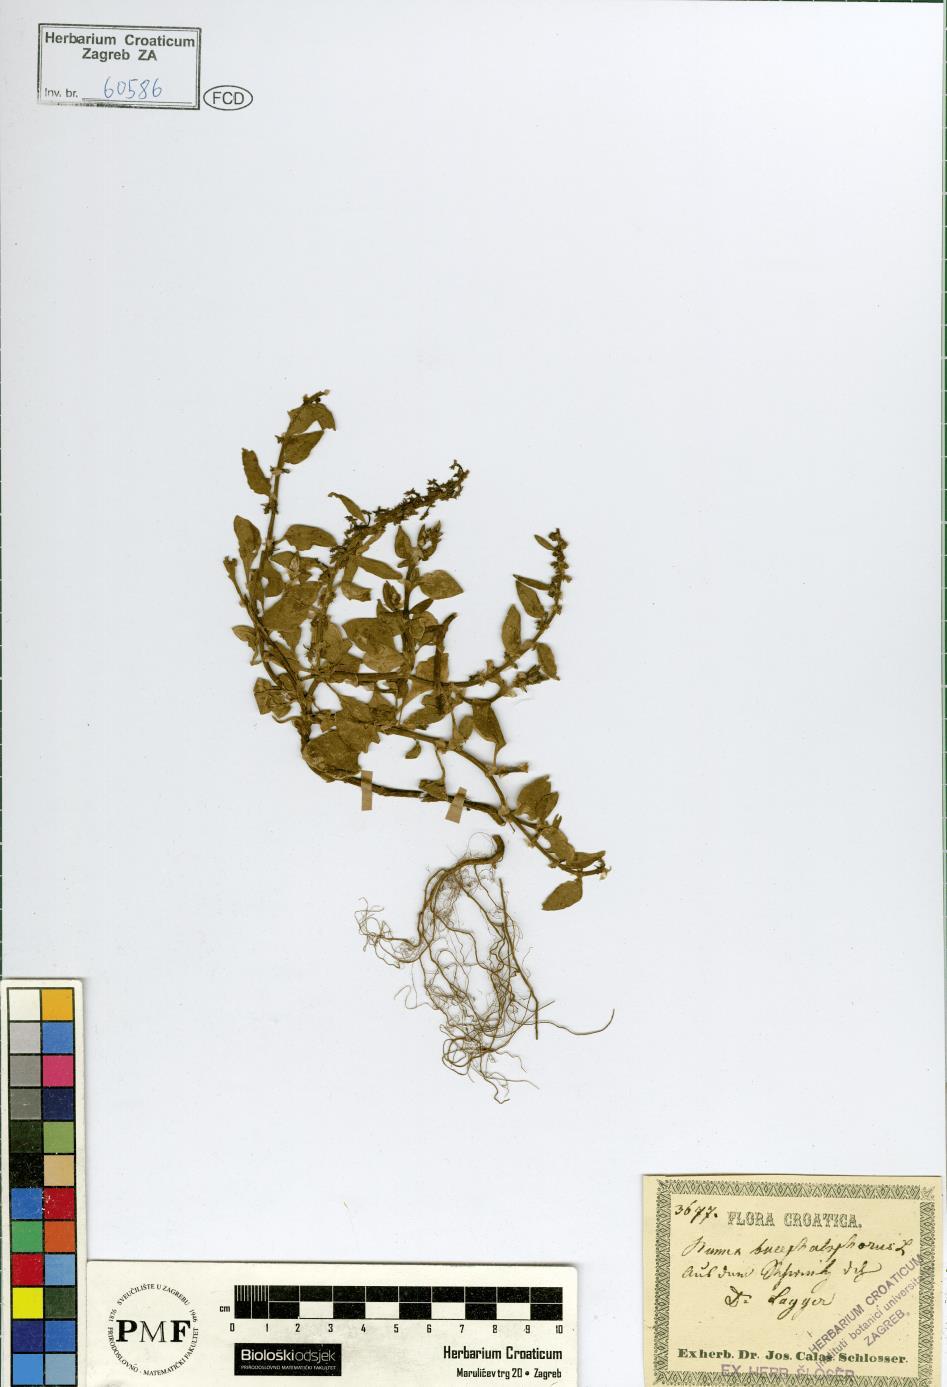 Rumex bucephalophorus L. U herbarijskoj zbirci ZA nalazi se samo jedan primjerak vrste Rumex bucephalophorus (Prilog 8).